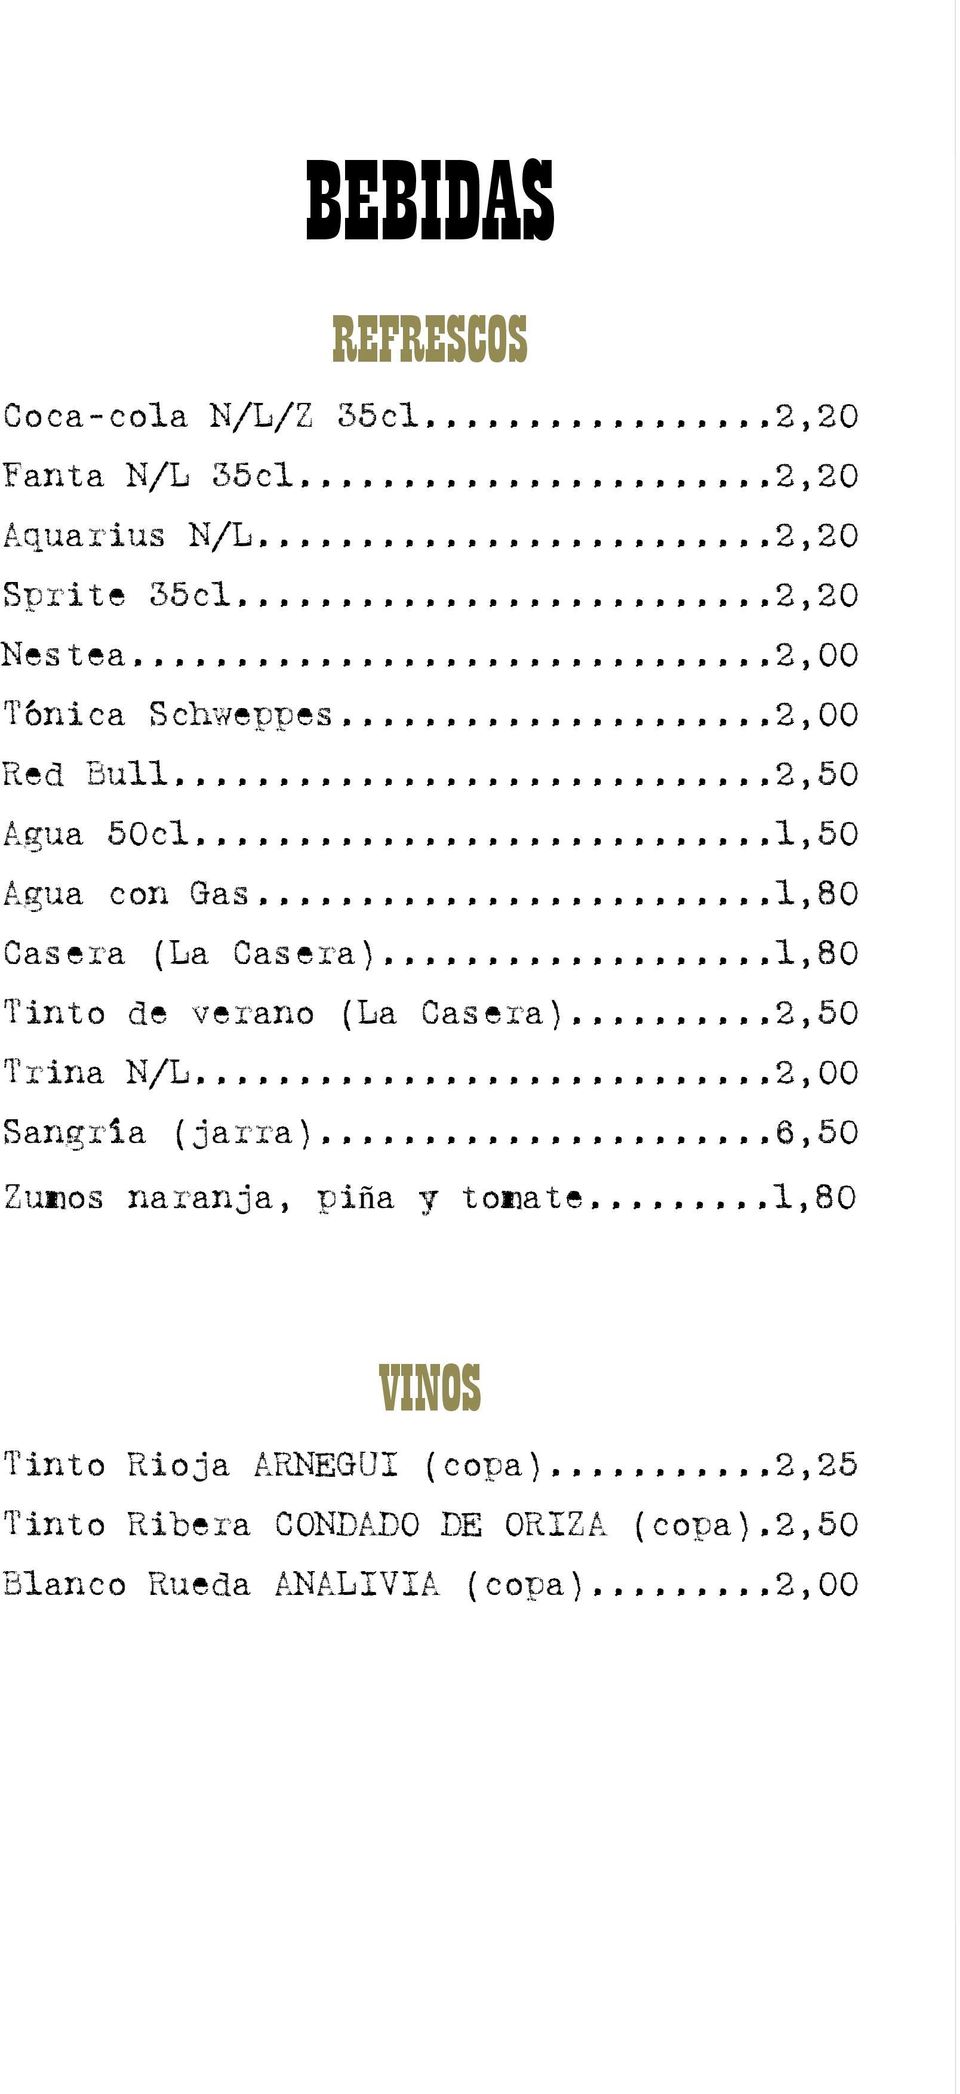 ..1,80 Tinto de verano (La Casera)...2,50 Trina N/L...2,00 Sangría (jarra)...6,50 Zumos naranja, piña y tomate.